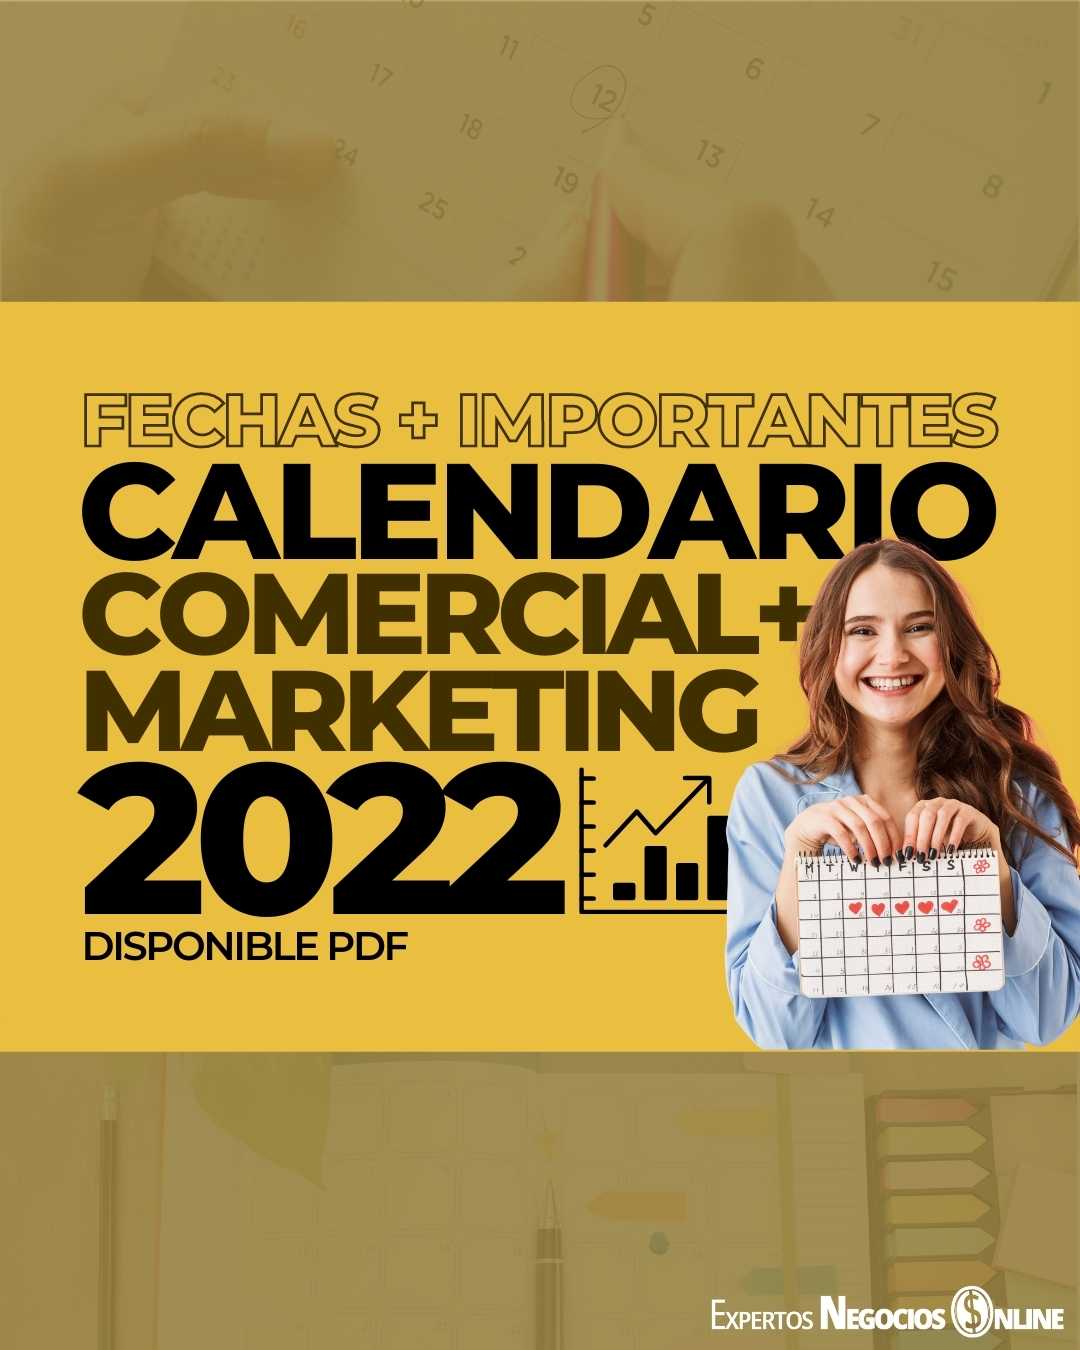 Calendario comercial 2022 para Marketing y eCommerce